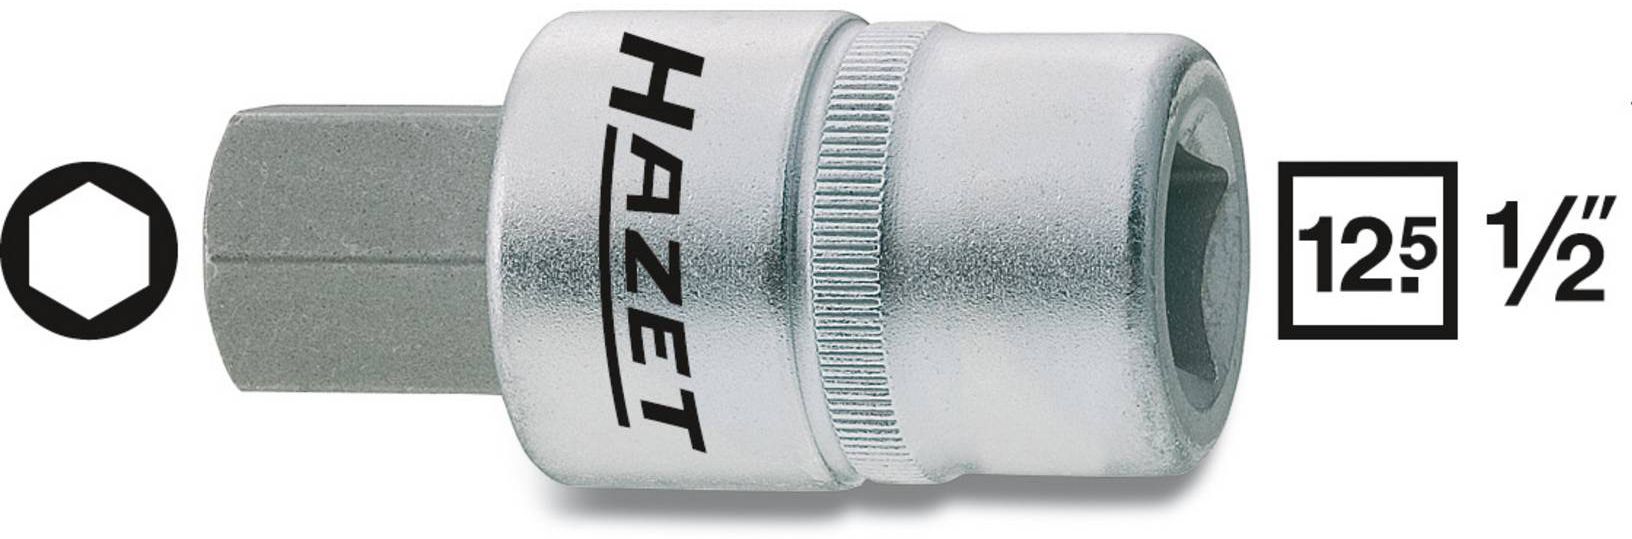 HAZET Schraubendreher-Einsatz, Inbus 986-5mm, 1/2", L: 60mm, D: 23mm - Steck- und Drehmomentschlüssel